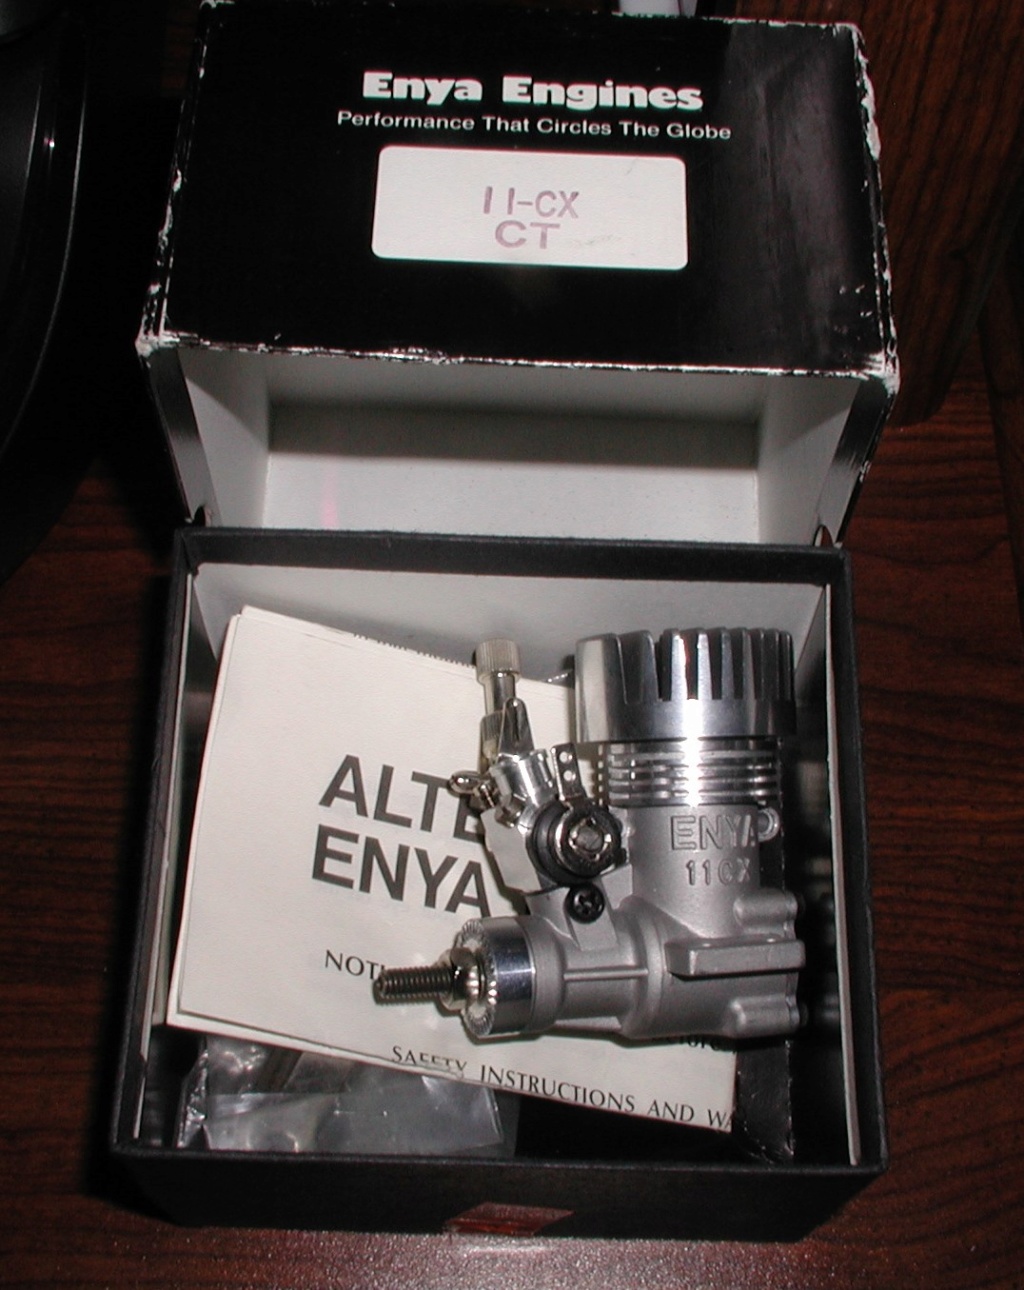           Enya engines P8170016